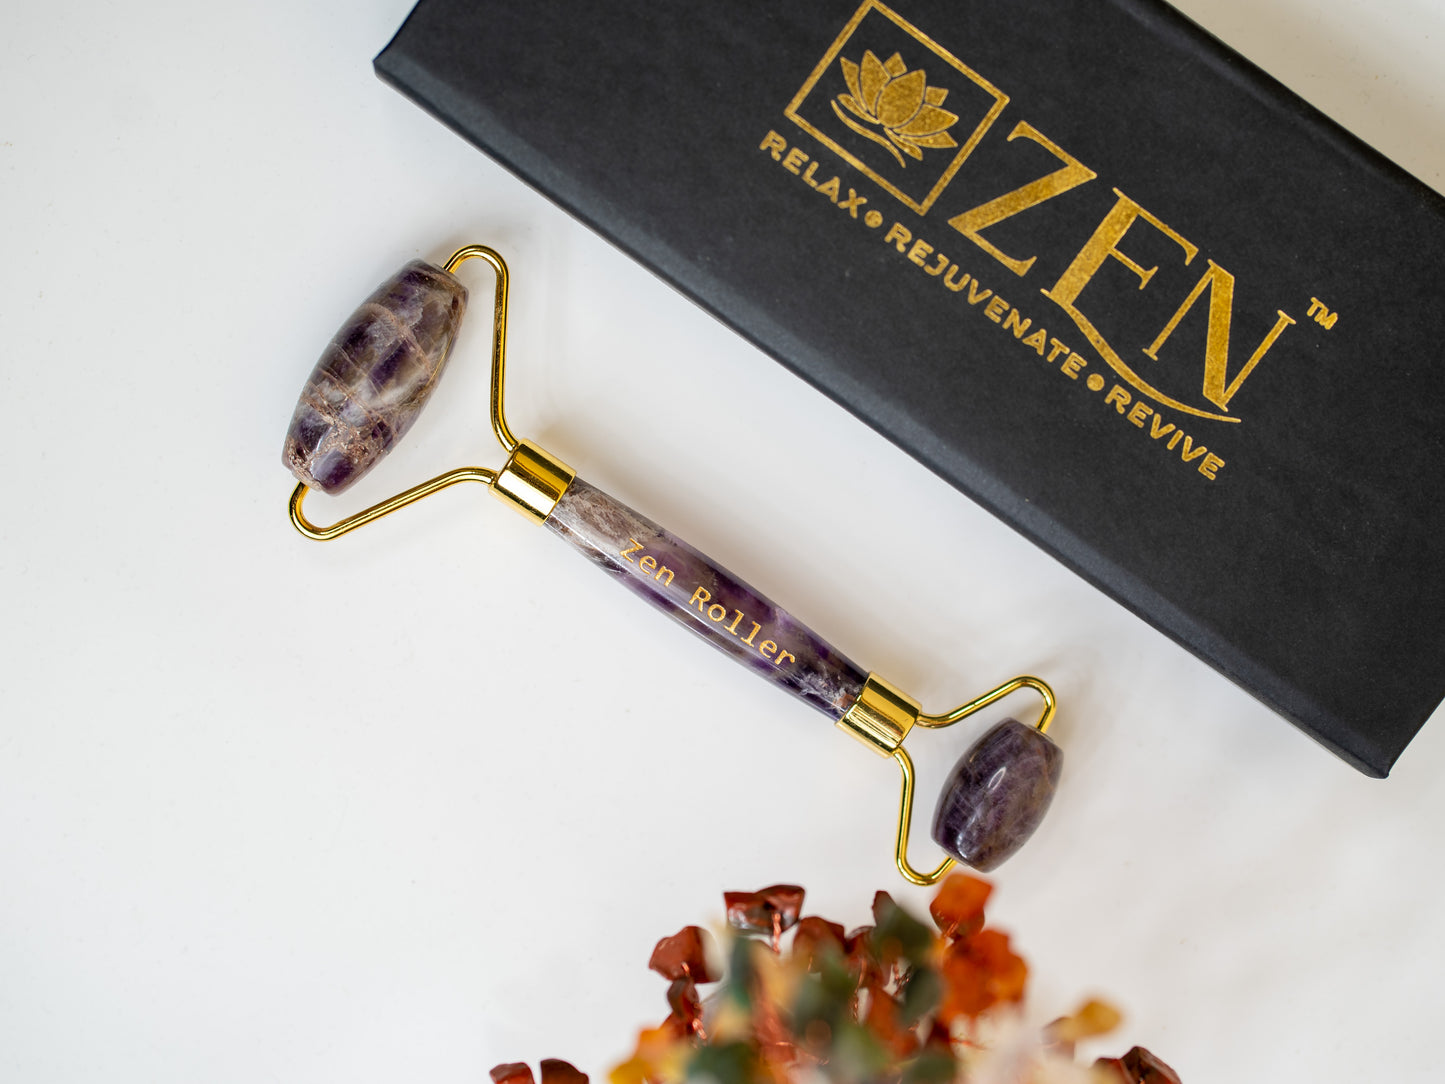 Zen Amethyst Roller | The Zen Crystals The Zen Crystals